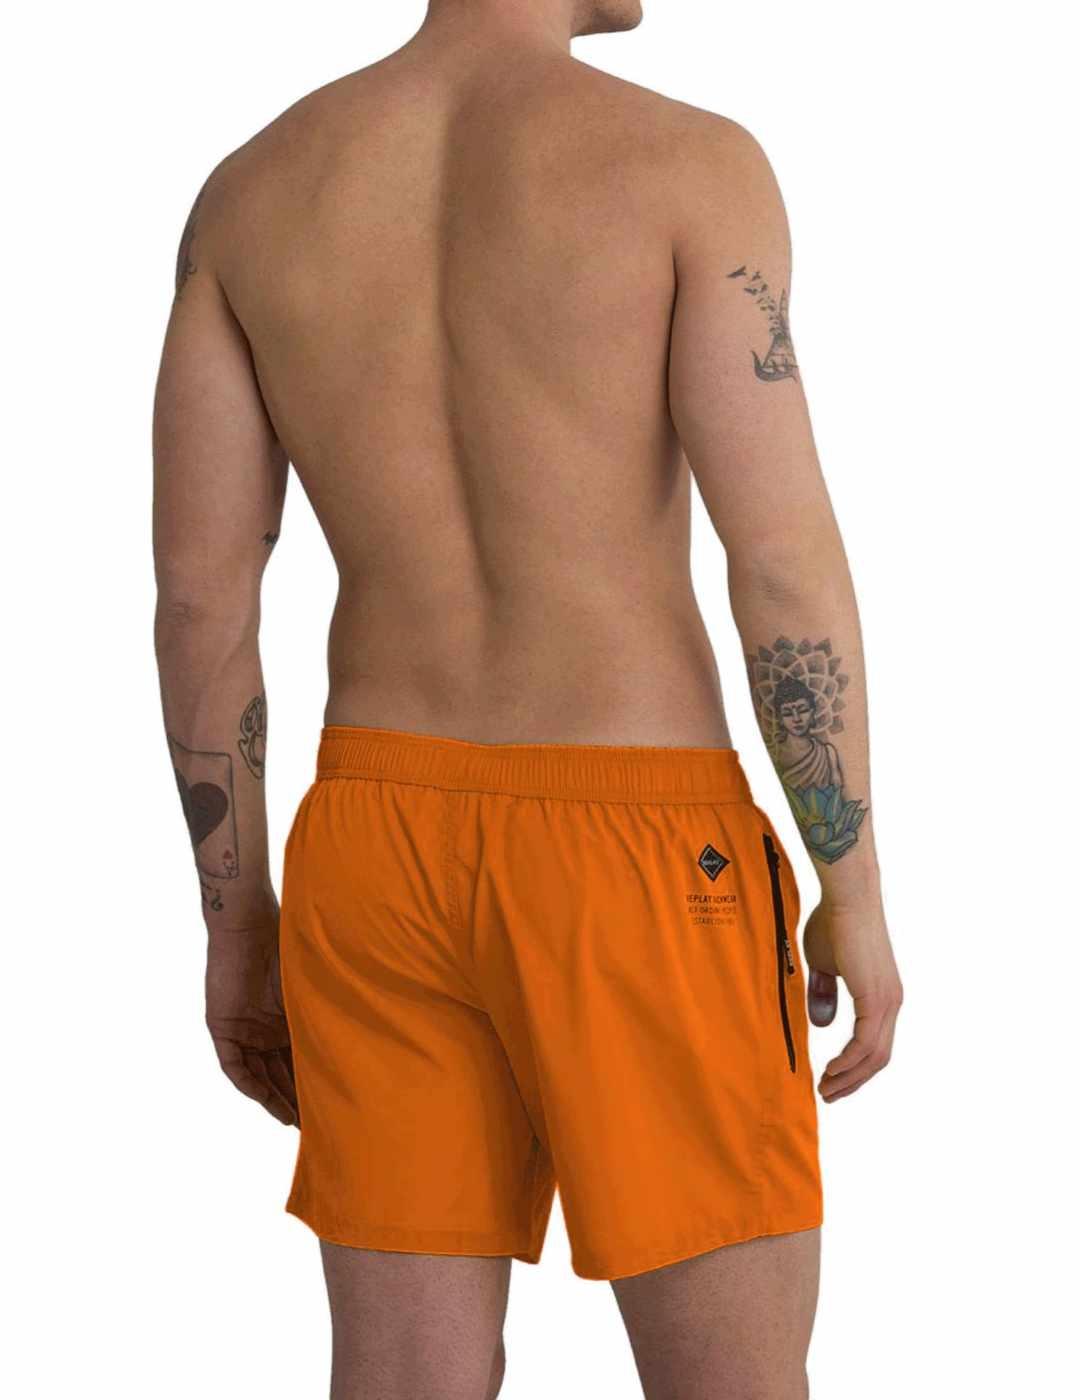 Bañador Replay naranja slim bolsillo cremallera para hombre